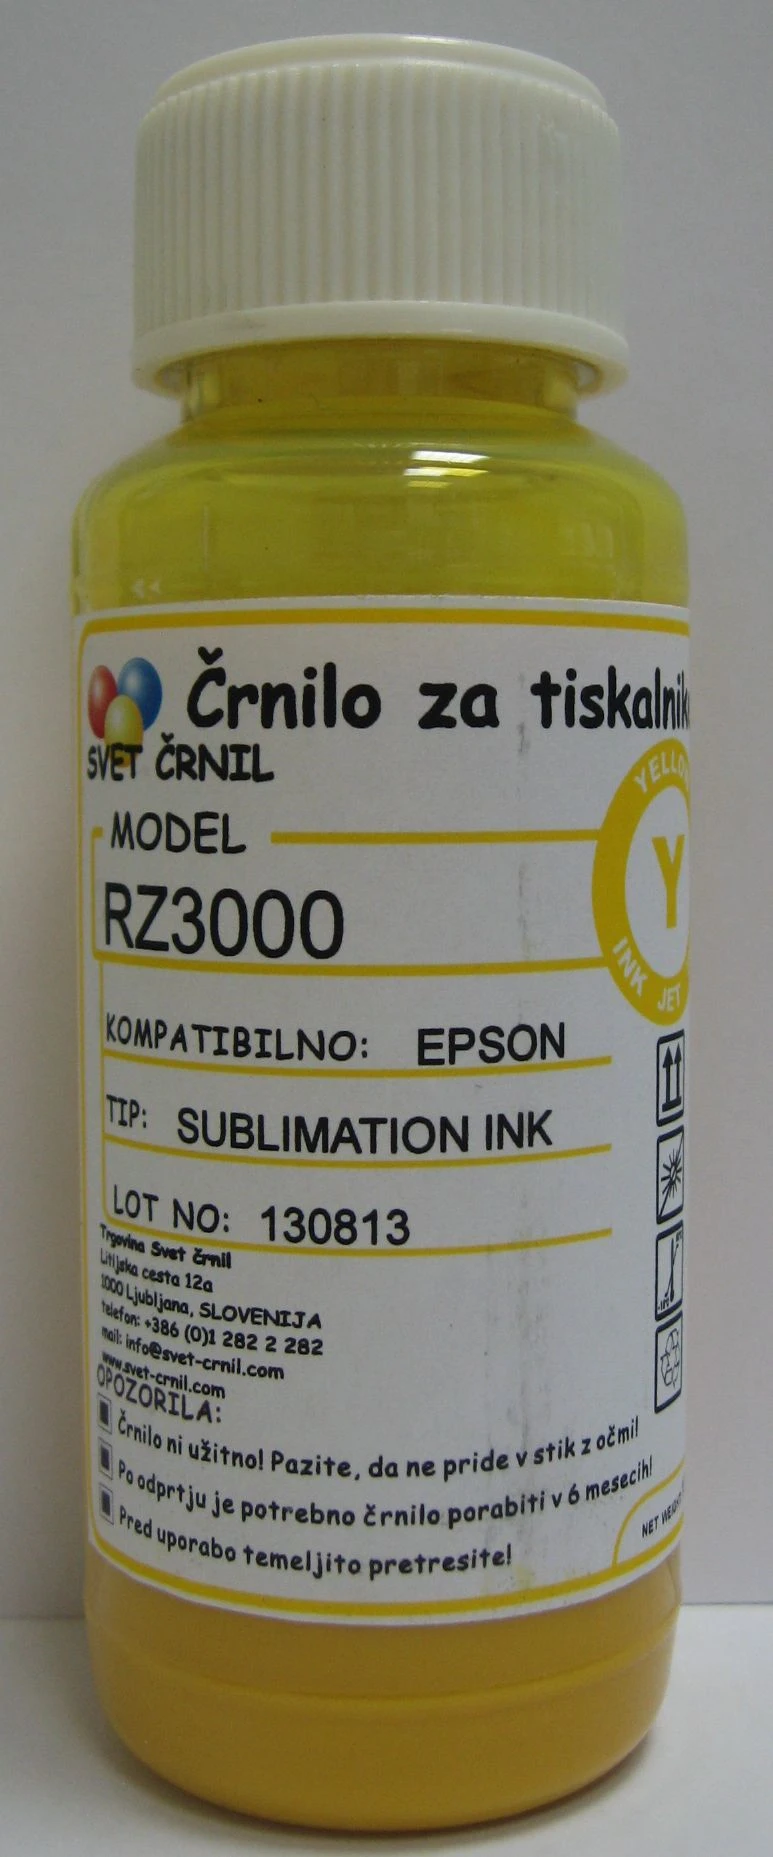 Hibridno sublimacijsko črnilo za Epson RZ3000 Yellow 100ml, rz3000,sublimacijsko črnilo,hibridna sublimacija,sublimacija